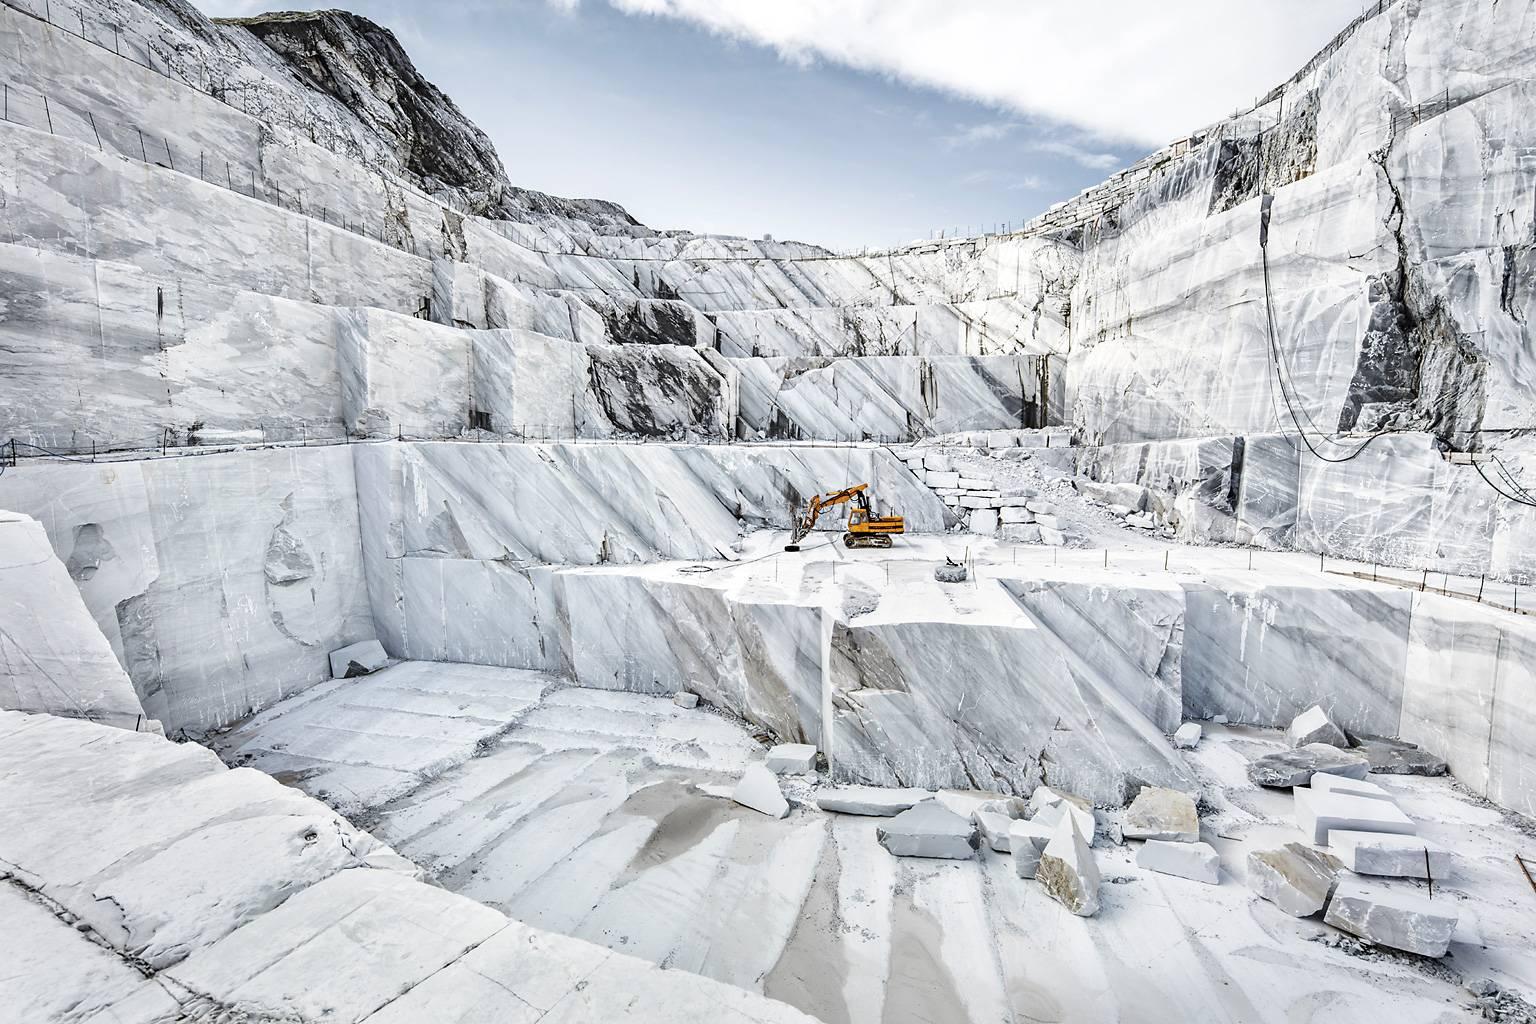 Marmo di Carrara - photographie grand format de la célèbre carrière de marbre italienne